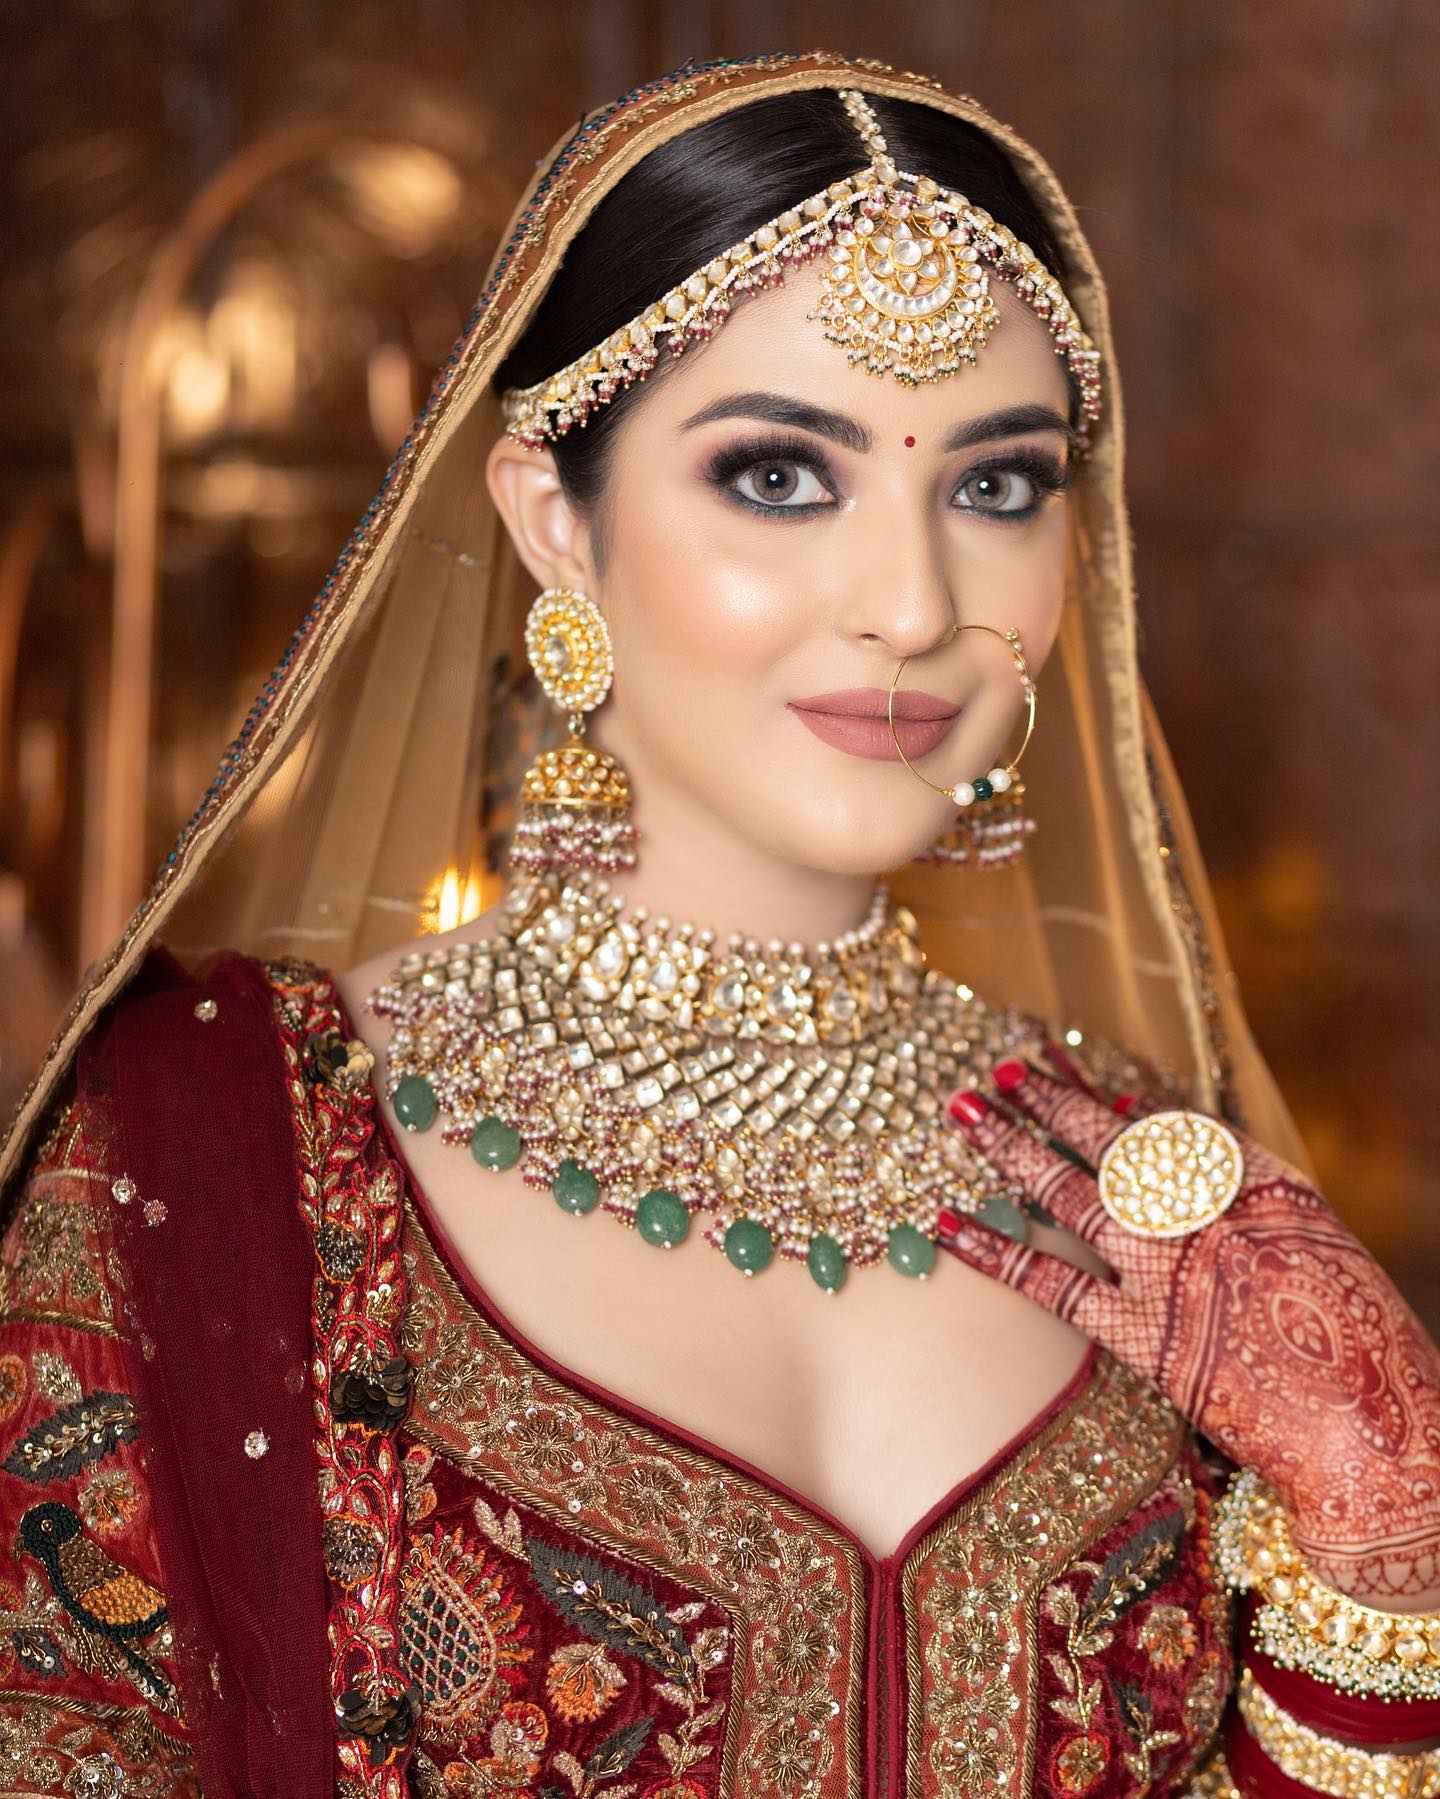 Wedding shoots - Indian wedding photography ideas to inspire | Wedding  photography poses, Bride photography poses, Bridal photography poses